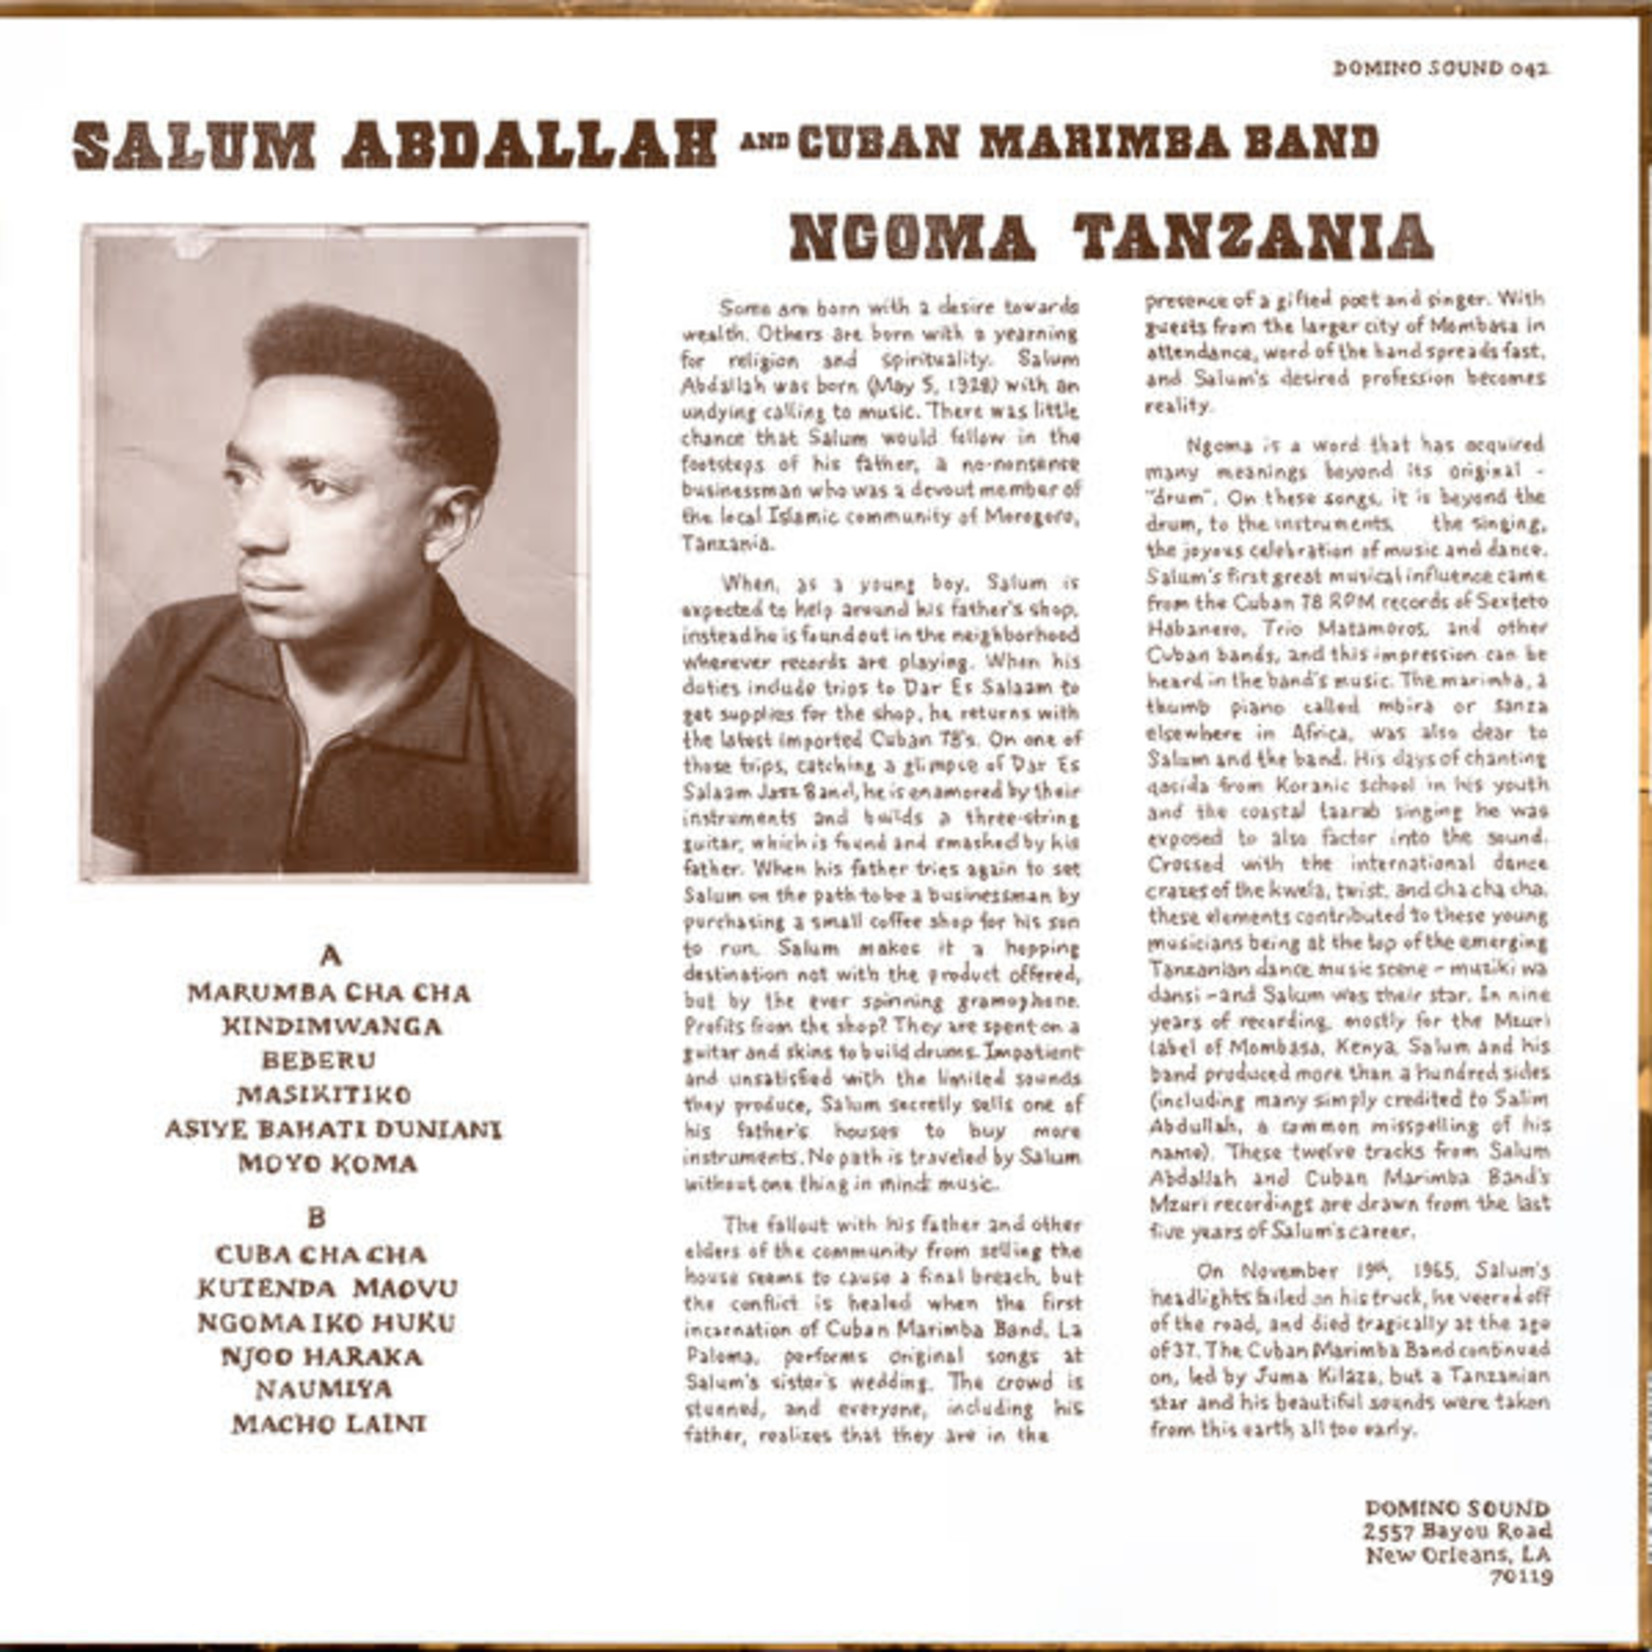 Salum Abdallah & Cuban Marimba Band - Ngoma Tanzania (LP)